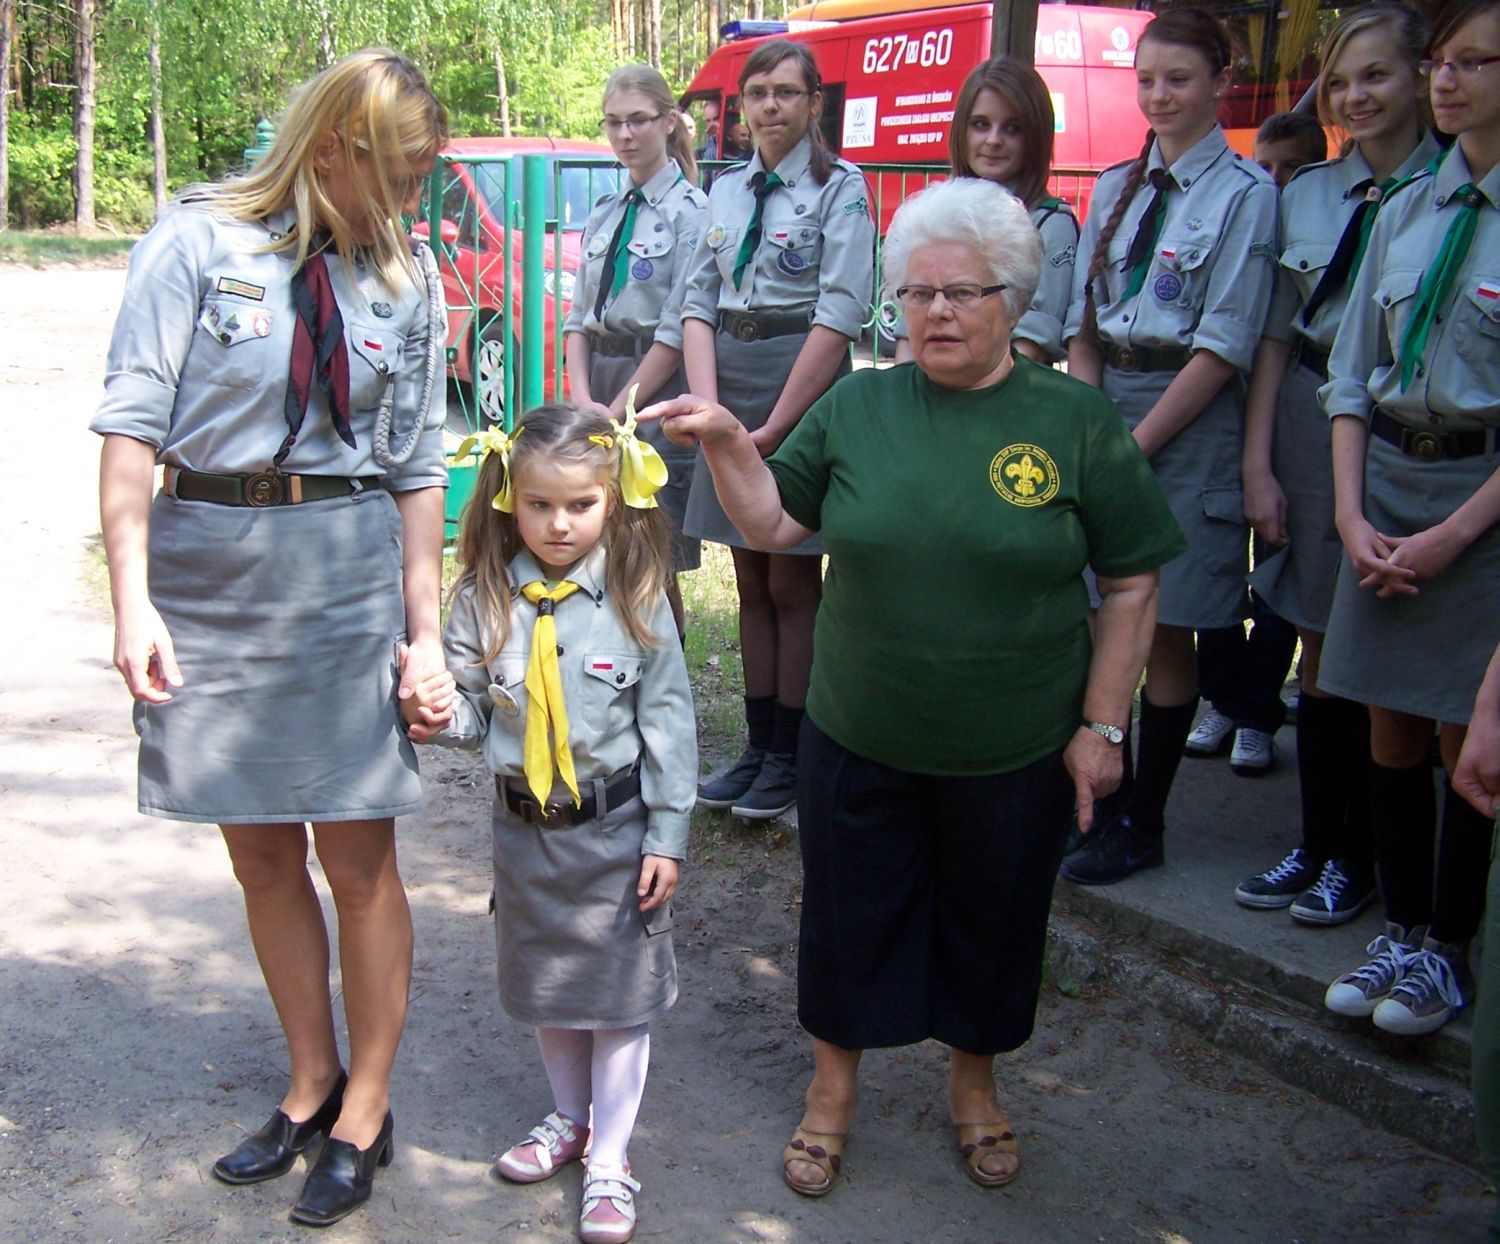 Trzy pokolenia harcerzy. Pierwsza od lewej: Katarzyna Kordulasiska Komendantka Hufca Sierpc, w rodku moda harcerka, po lewej Hanna Kowalska - Honorowa Komendantka Hufca Sierpc, lato 2012 r.